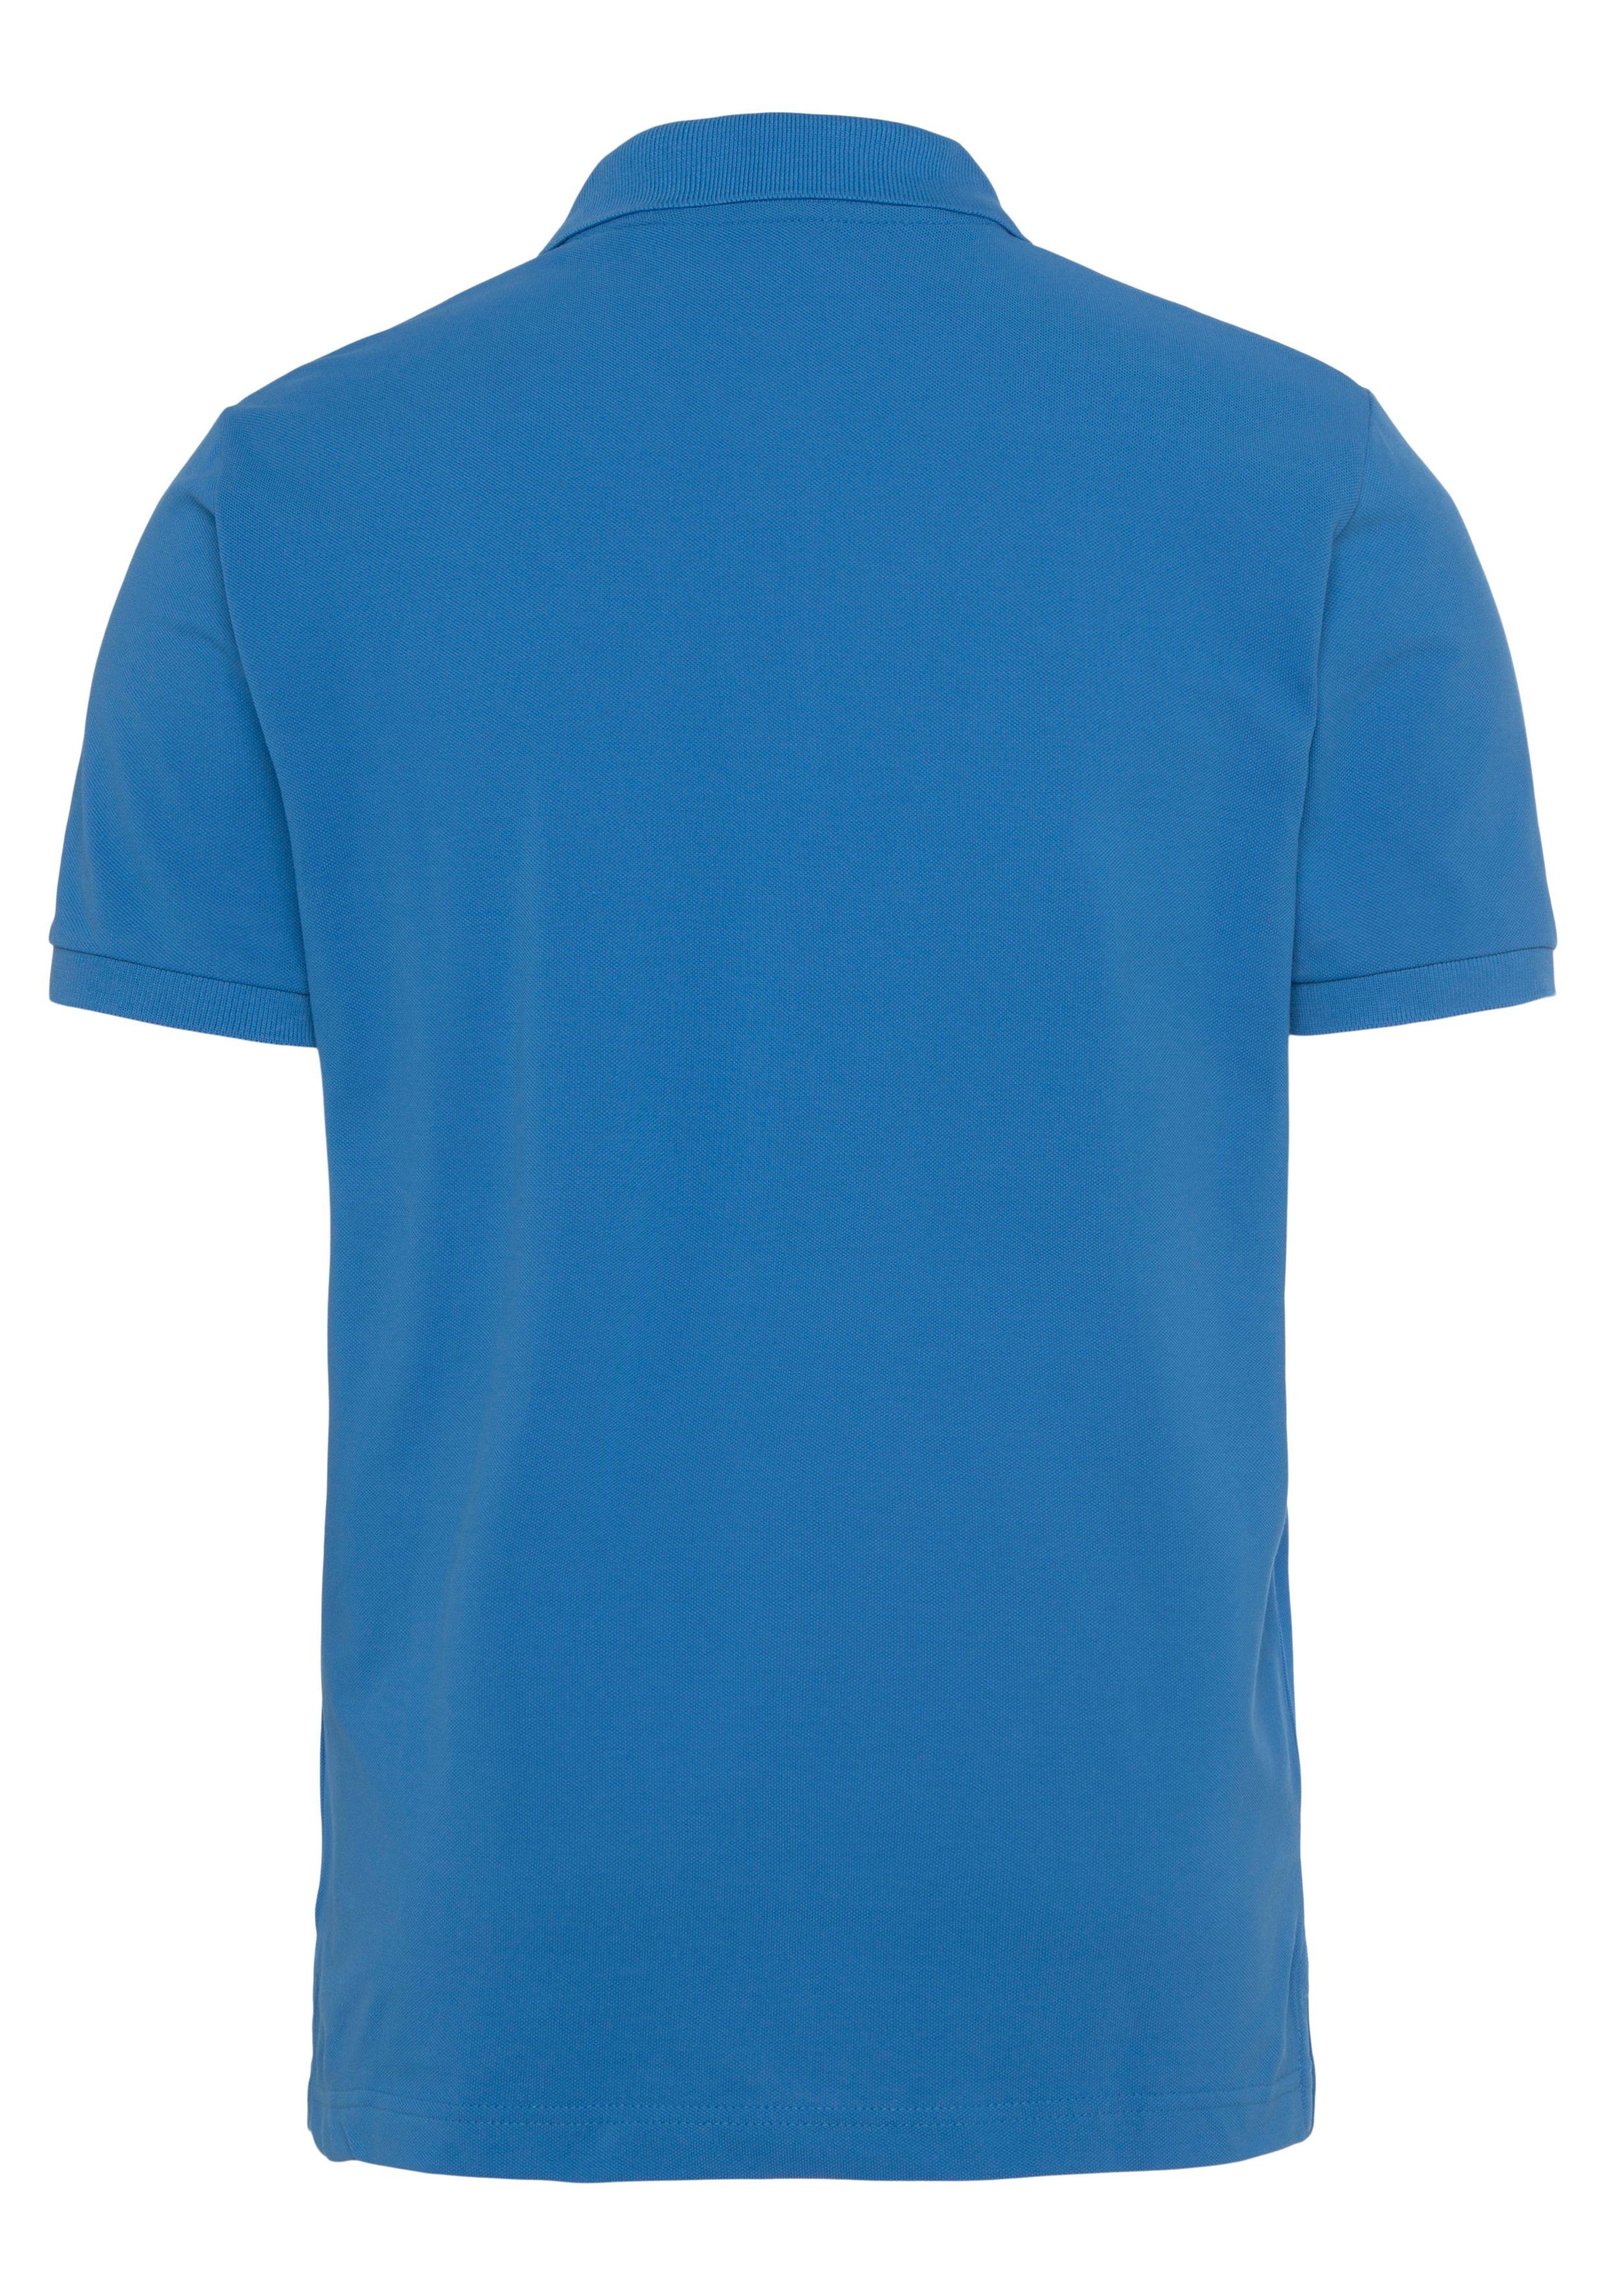 blue KA day Shirt, Piqué-Polo Casual, Gant Regular Poloshirt Qualität Fit, MD. RUGGER PIQUE Premium Smart